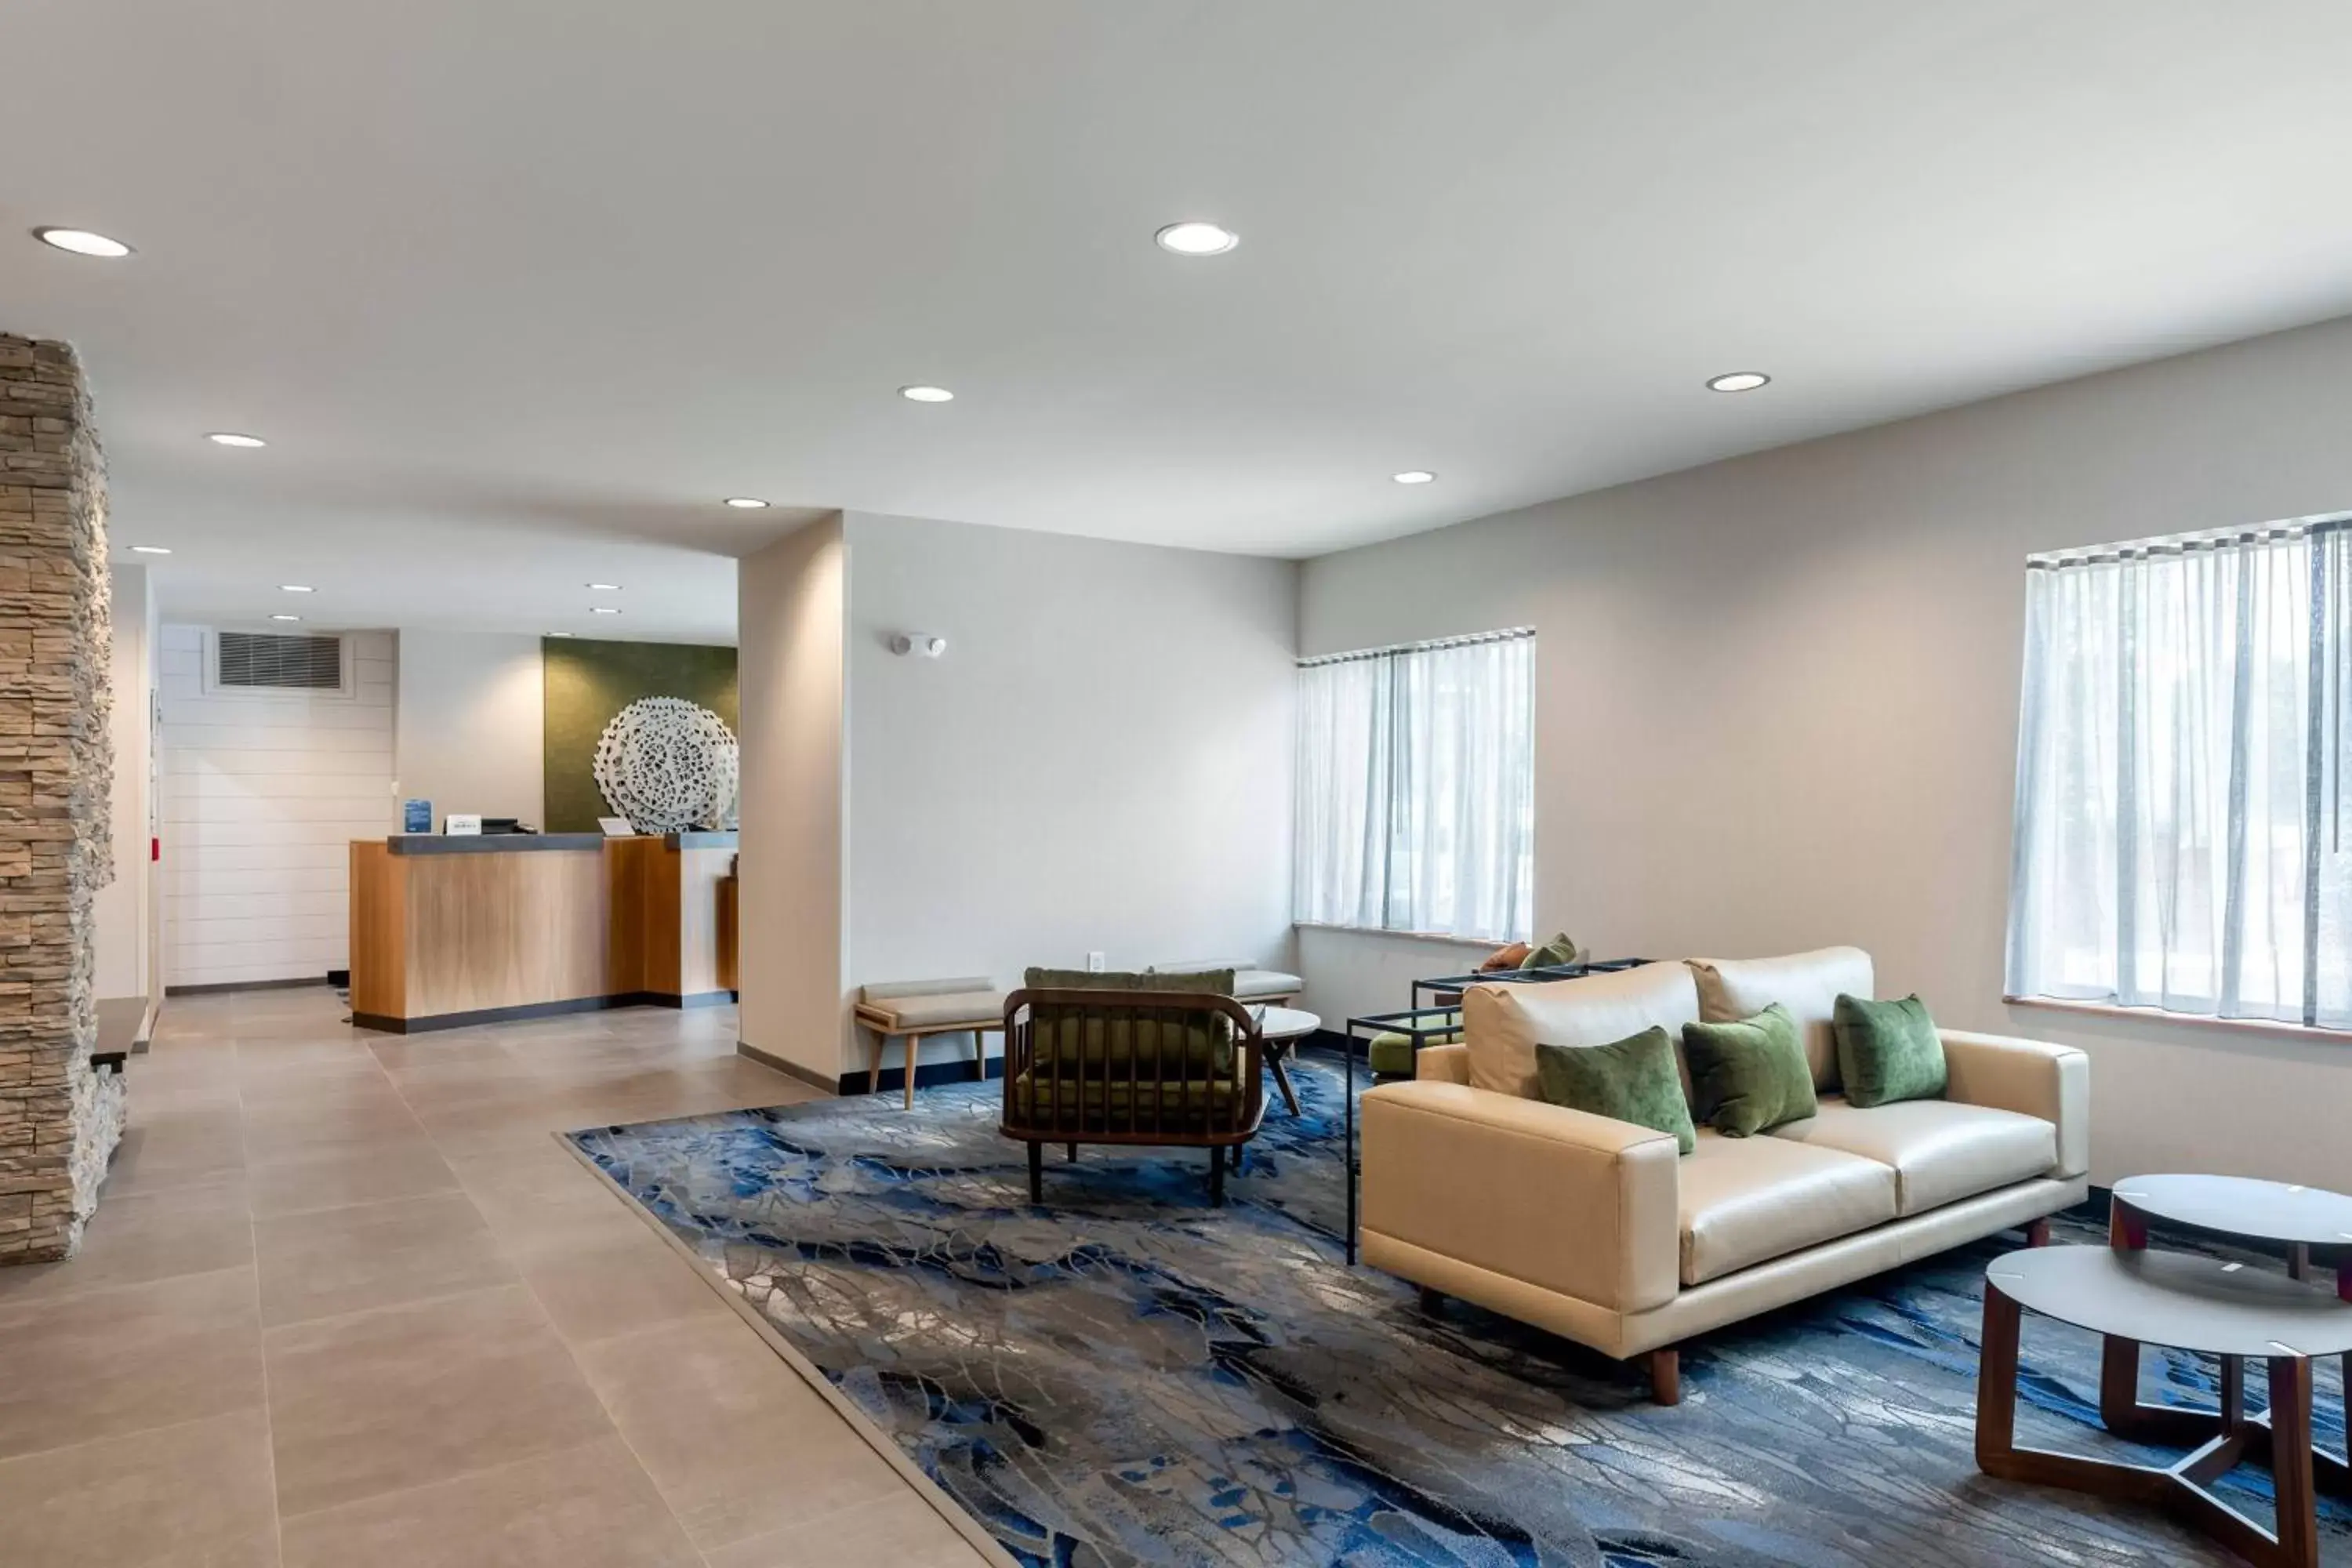 Lobby or reception, Lobby/Reception in Fairfield Inn & Suites Savannah Airport